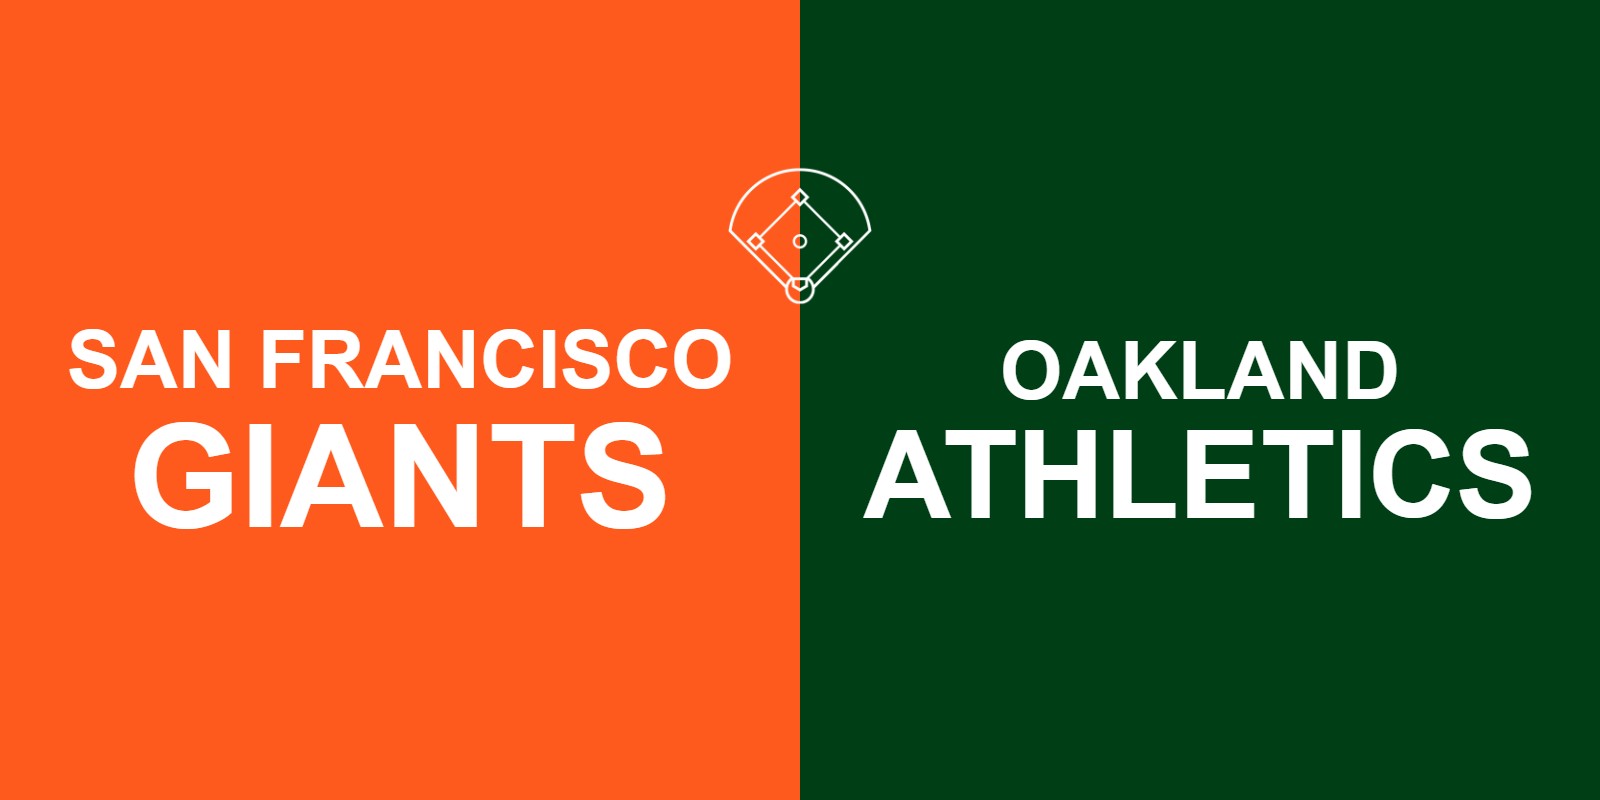 Giants vs Athletics